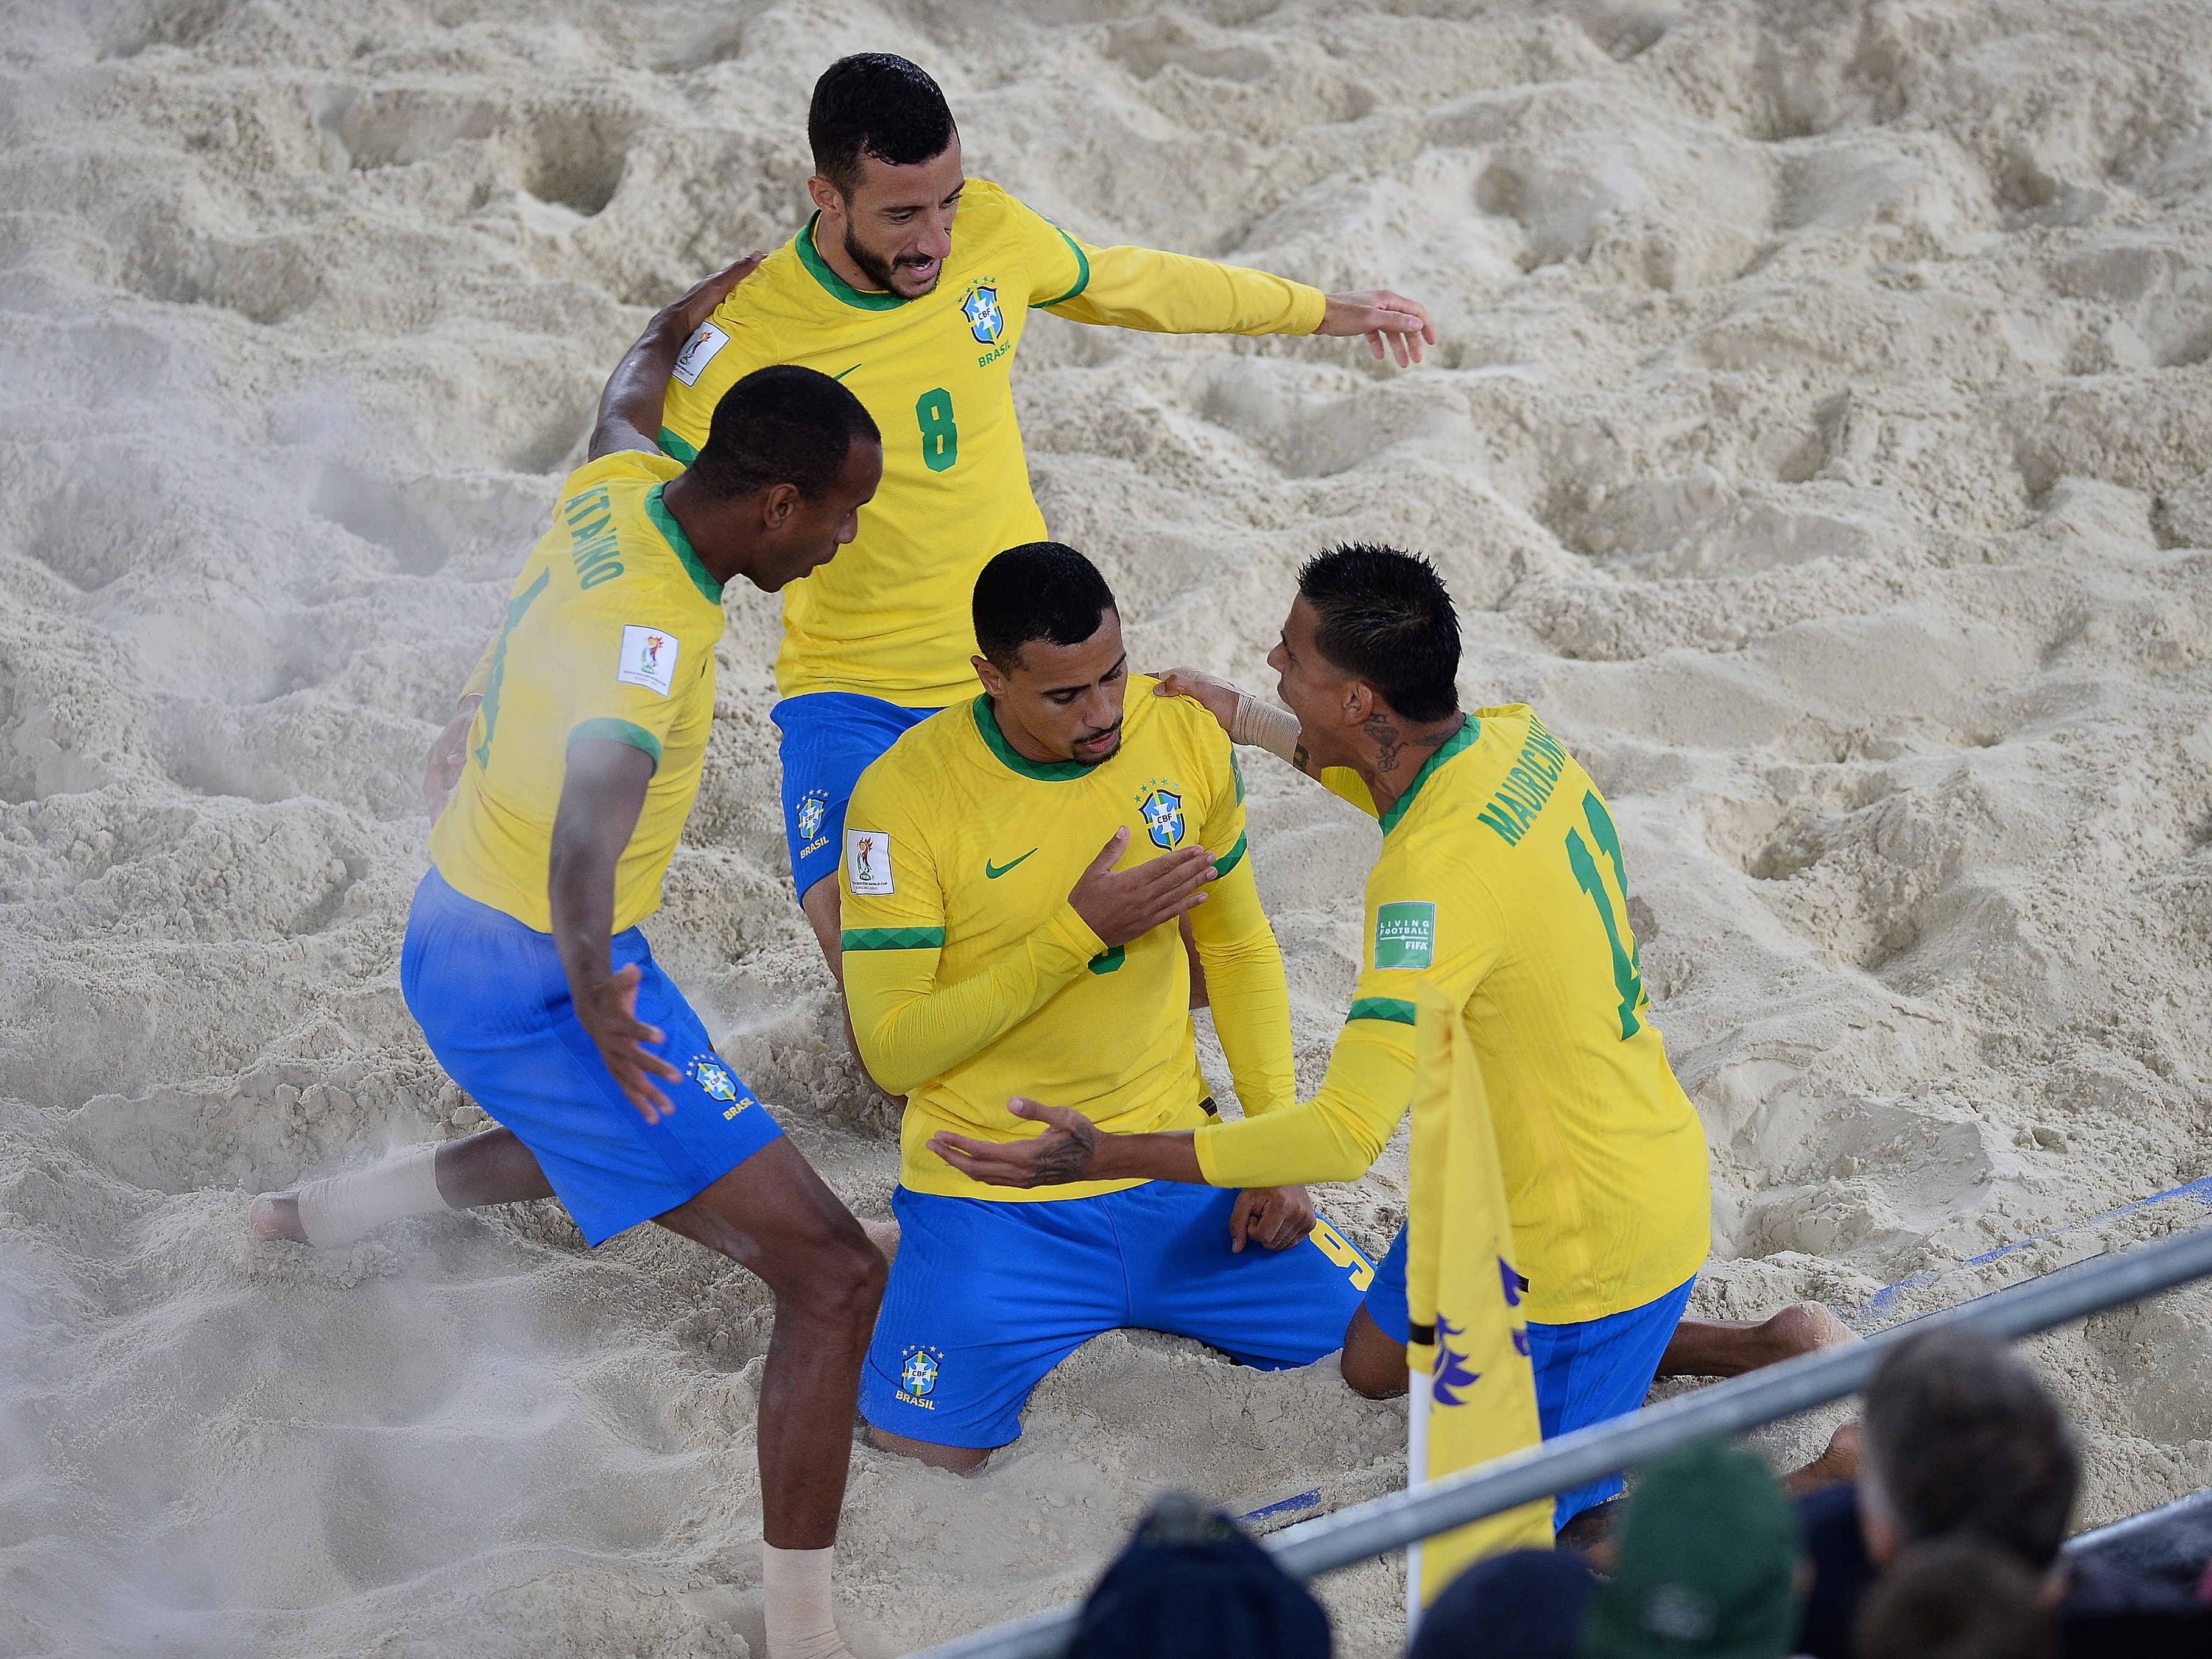 Veja todos os campeões da Copa do Mundo de Futebol de Areia, futebol de  areia